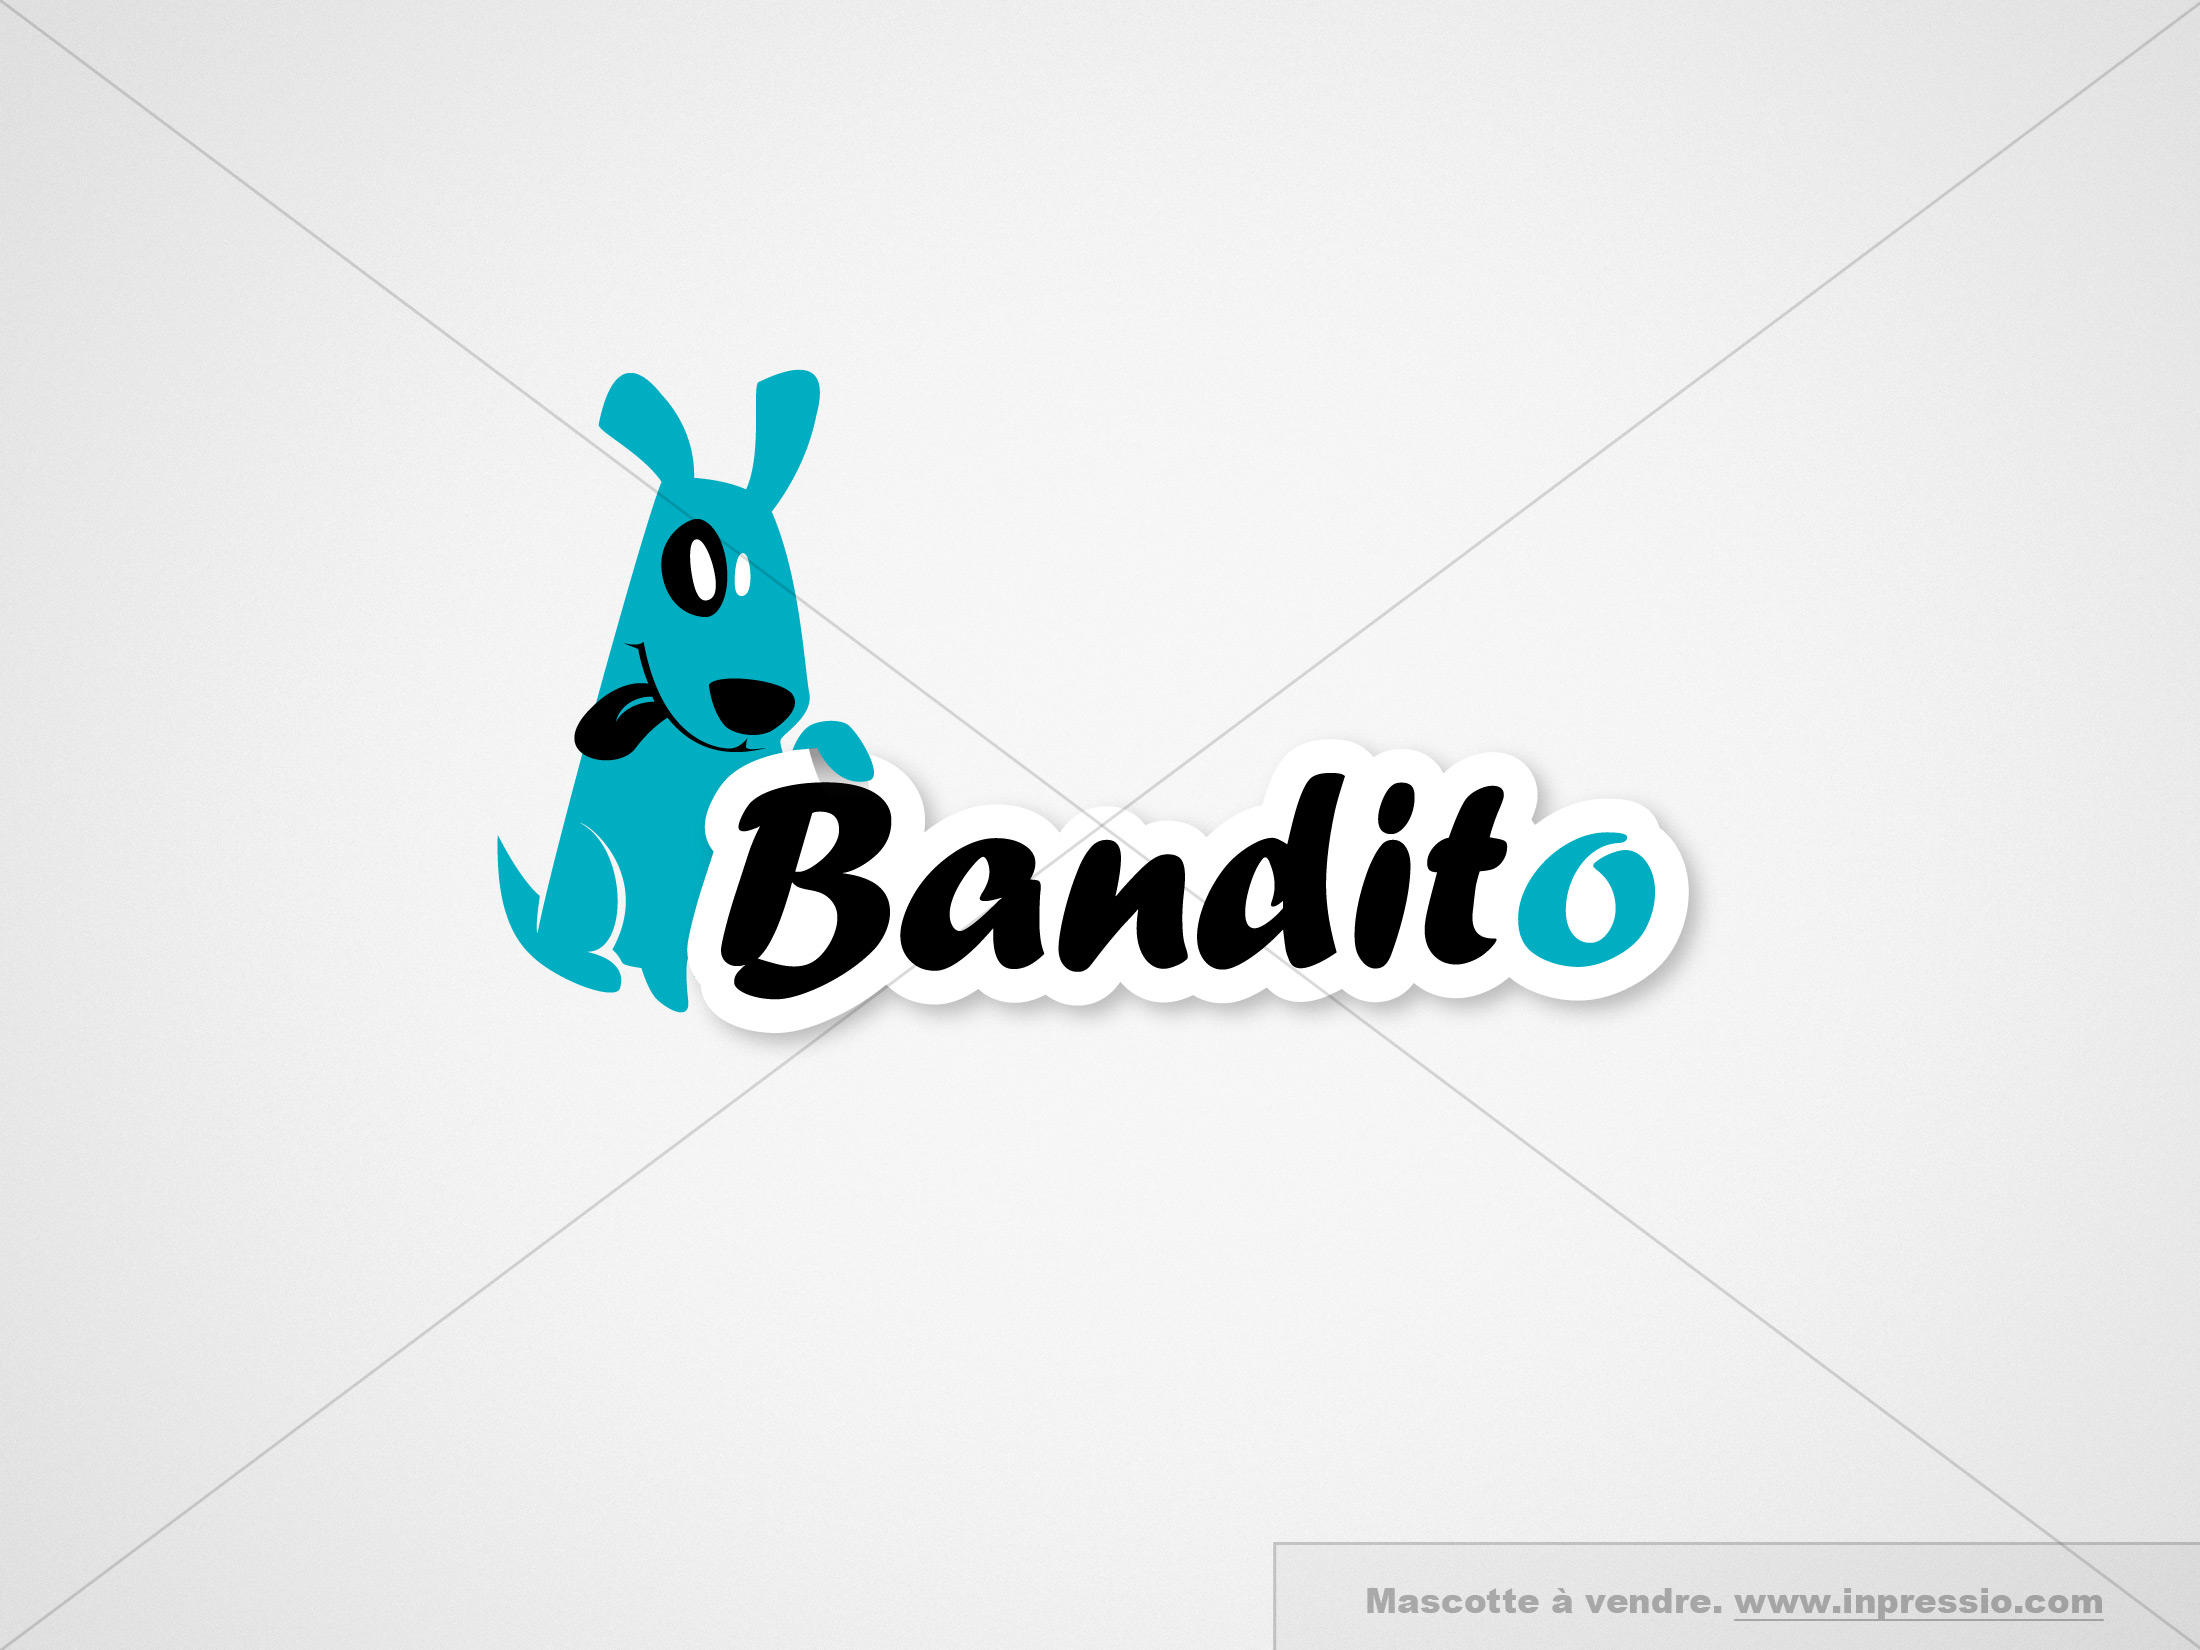 Bandito - Mascotte à vendre